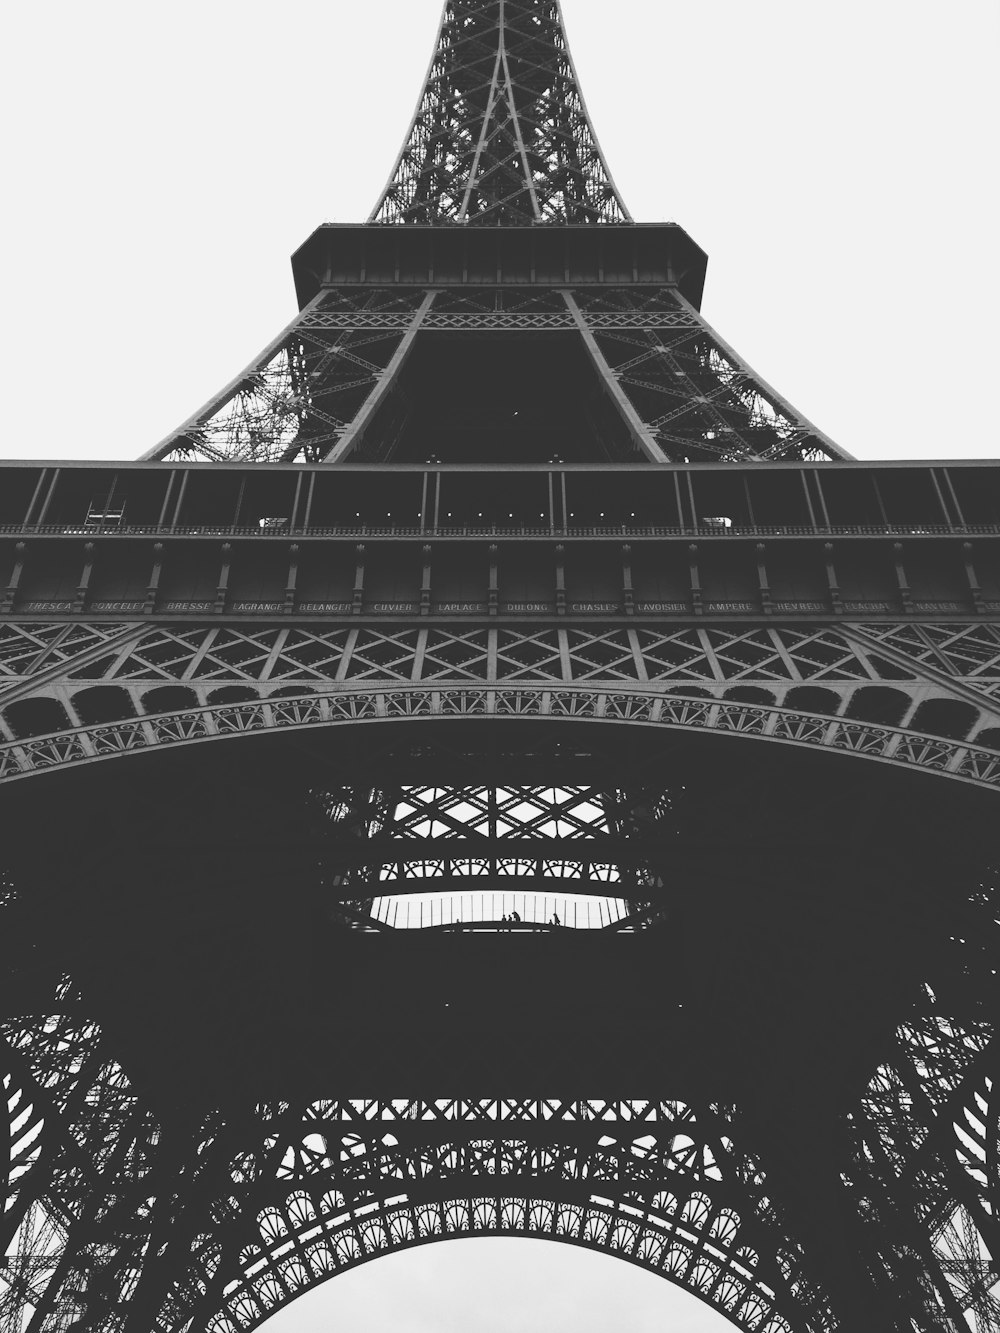 Foto in scala di grigi della Torre Eiffel di Parigi